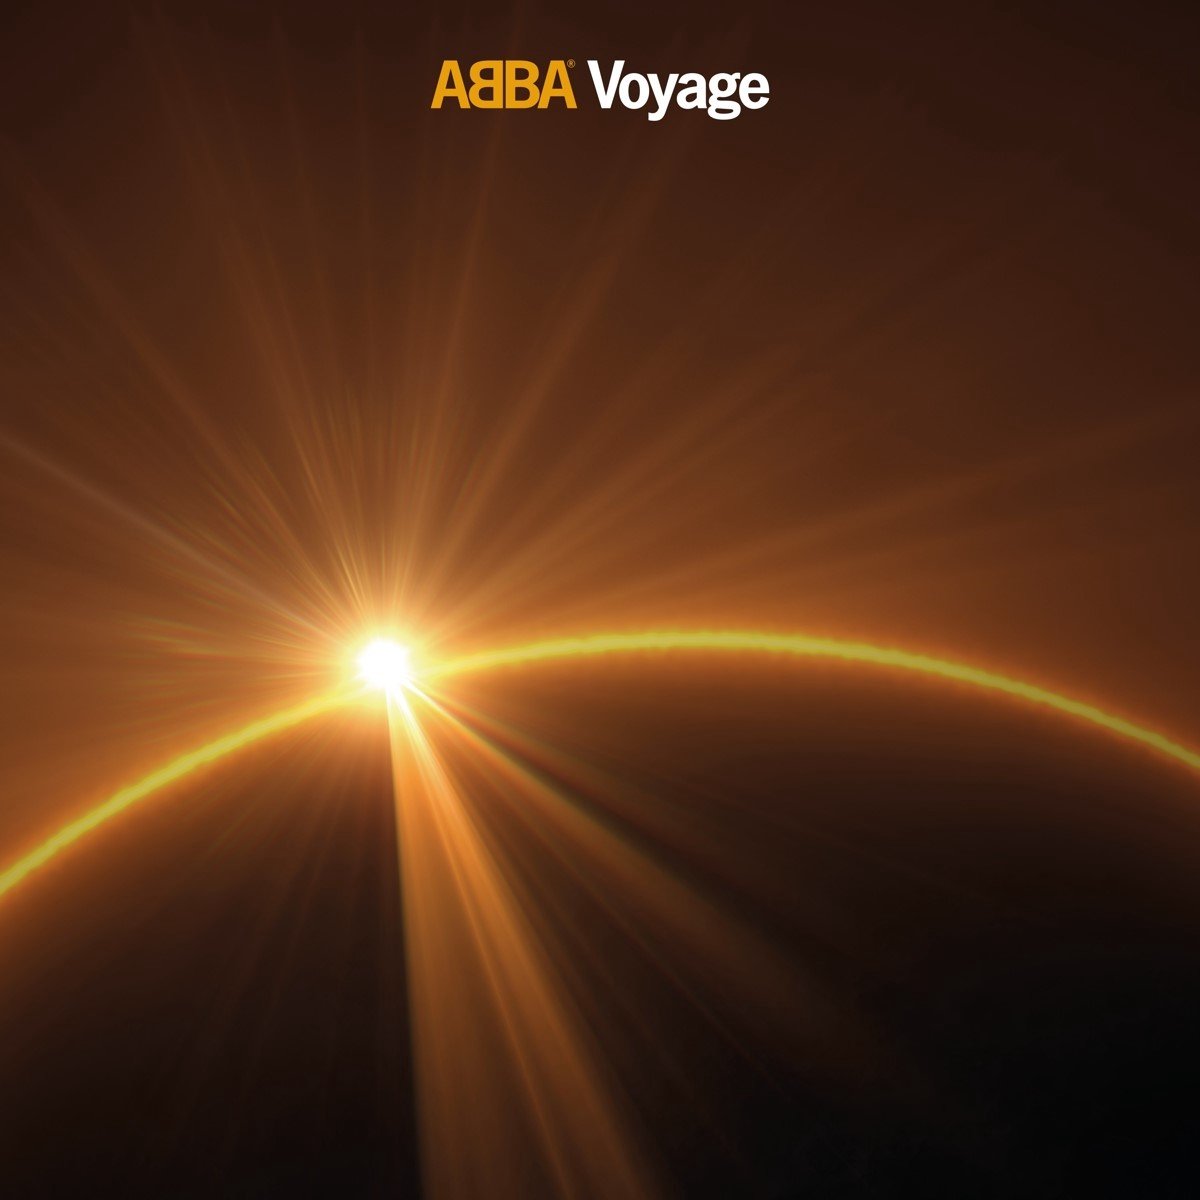 Voyage (CD) - ABBA